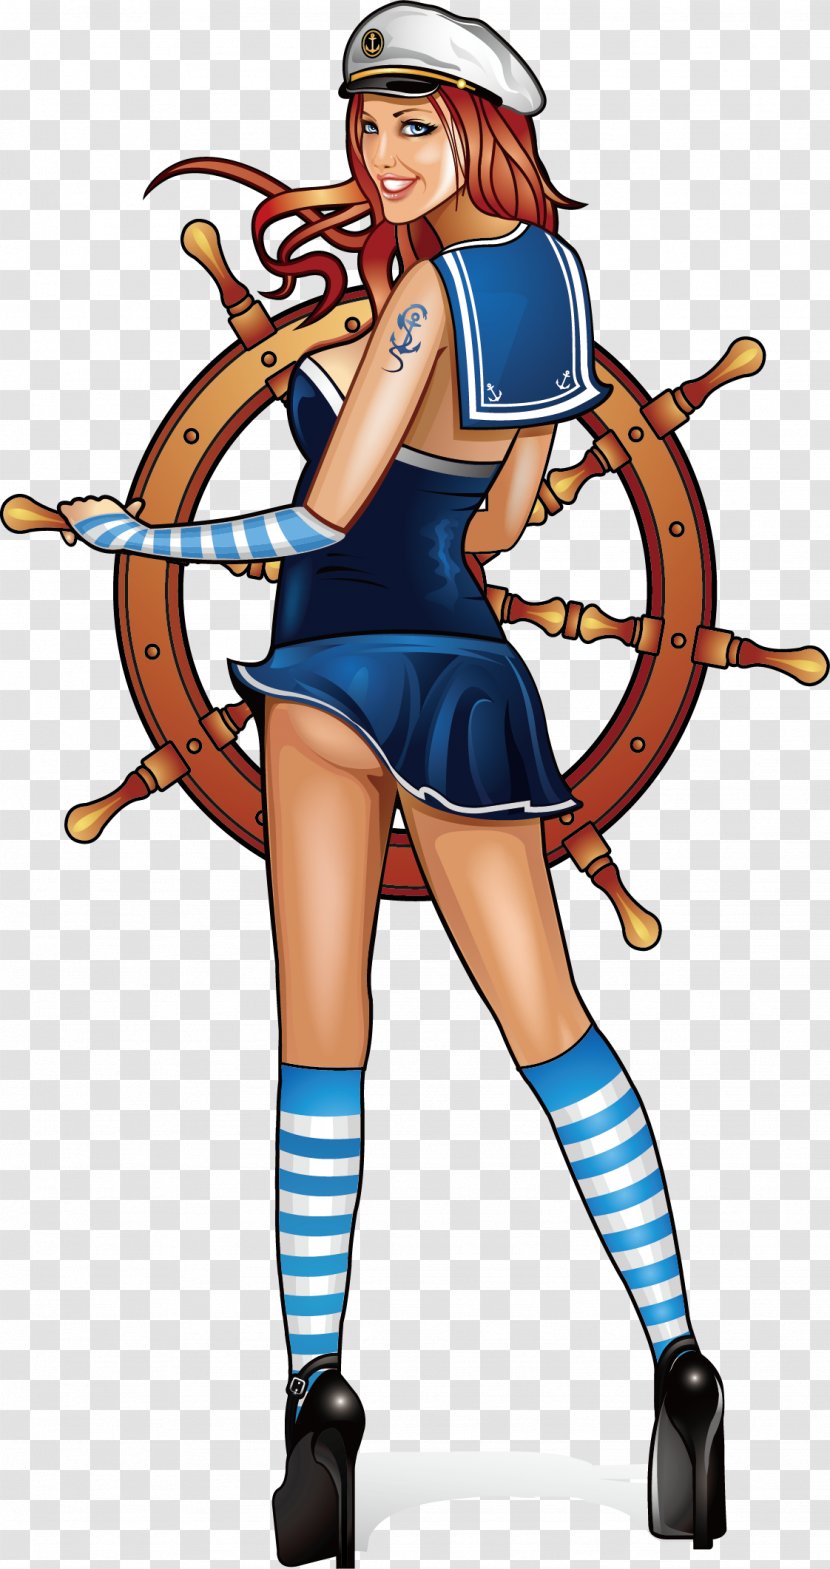 Sea Captain Cartoon Sailor Illustration - Sailing Man Transparent PNG